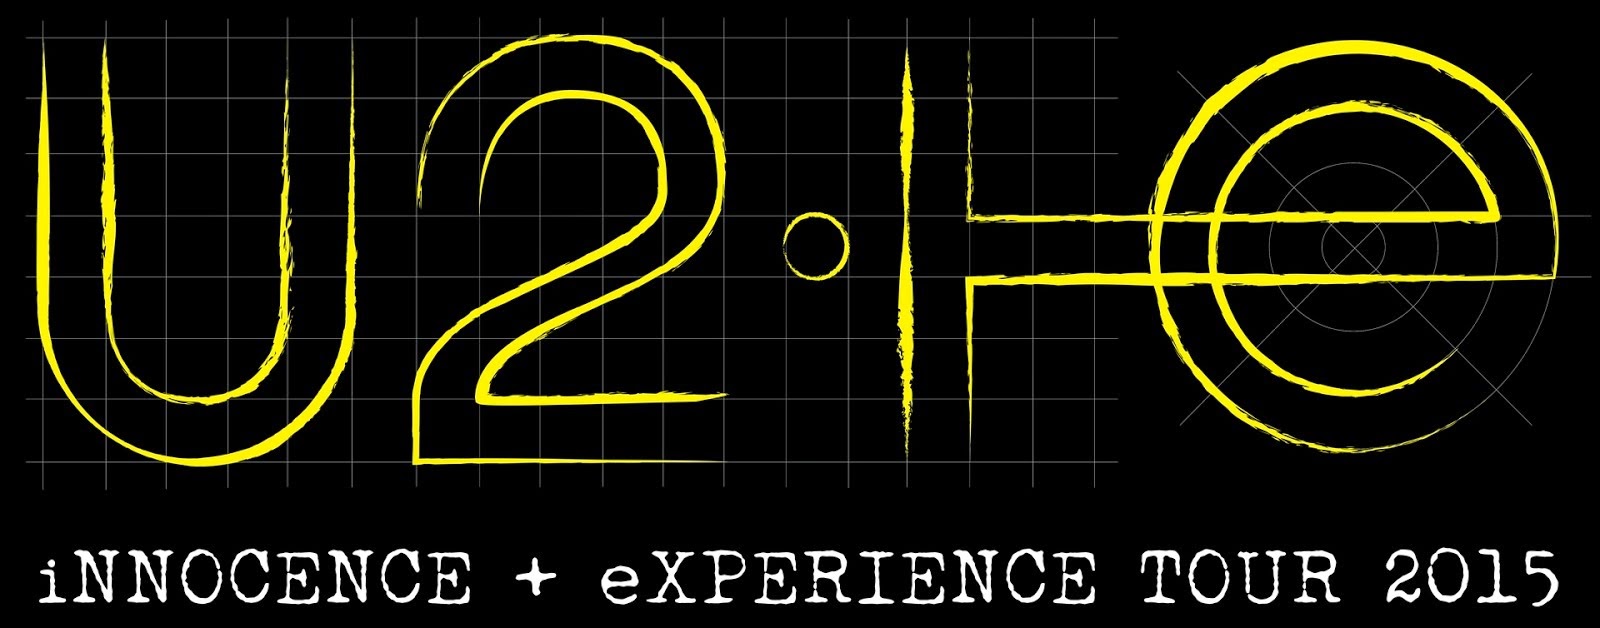 U2 iNNOCENCE + eXPERIENCE TOUR